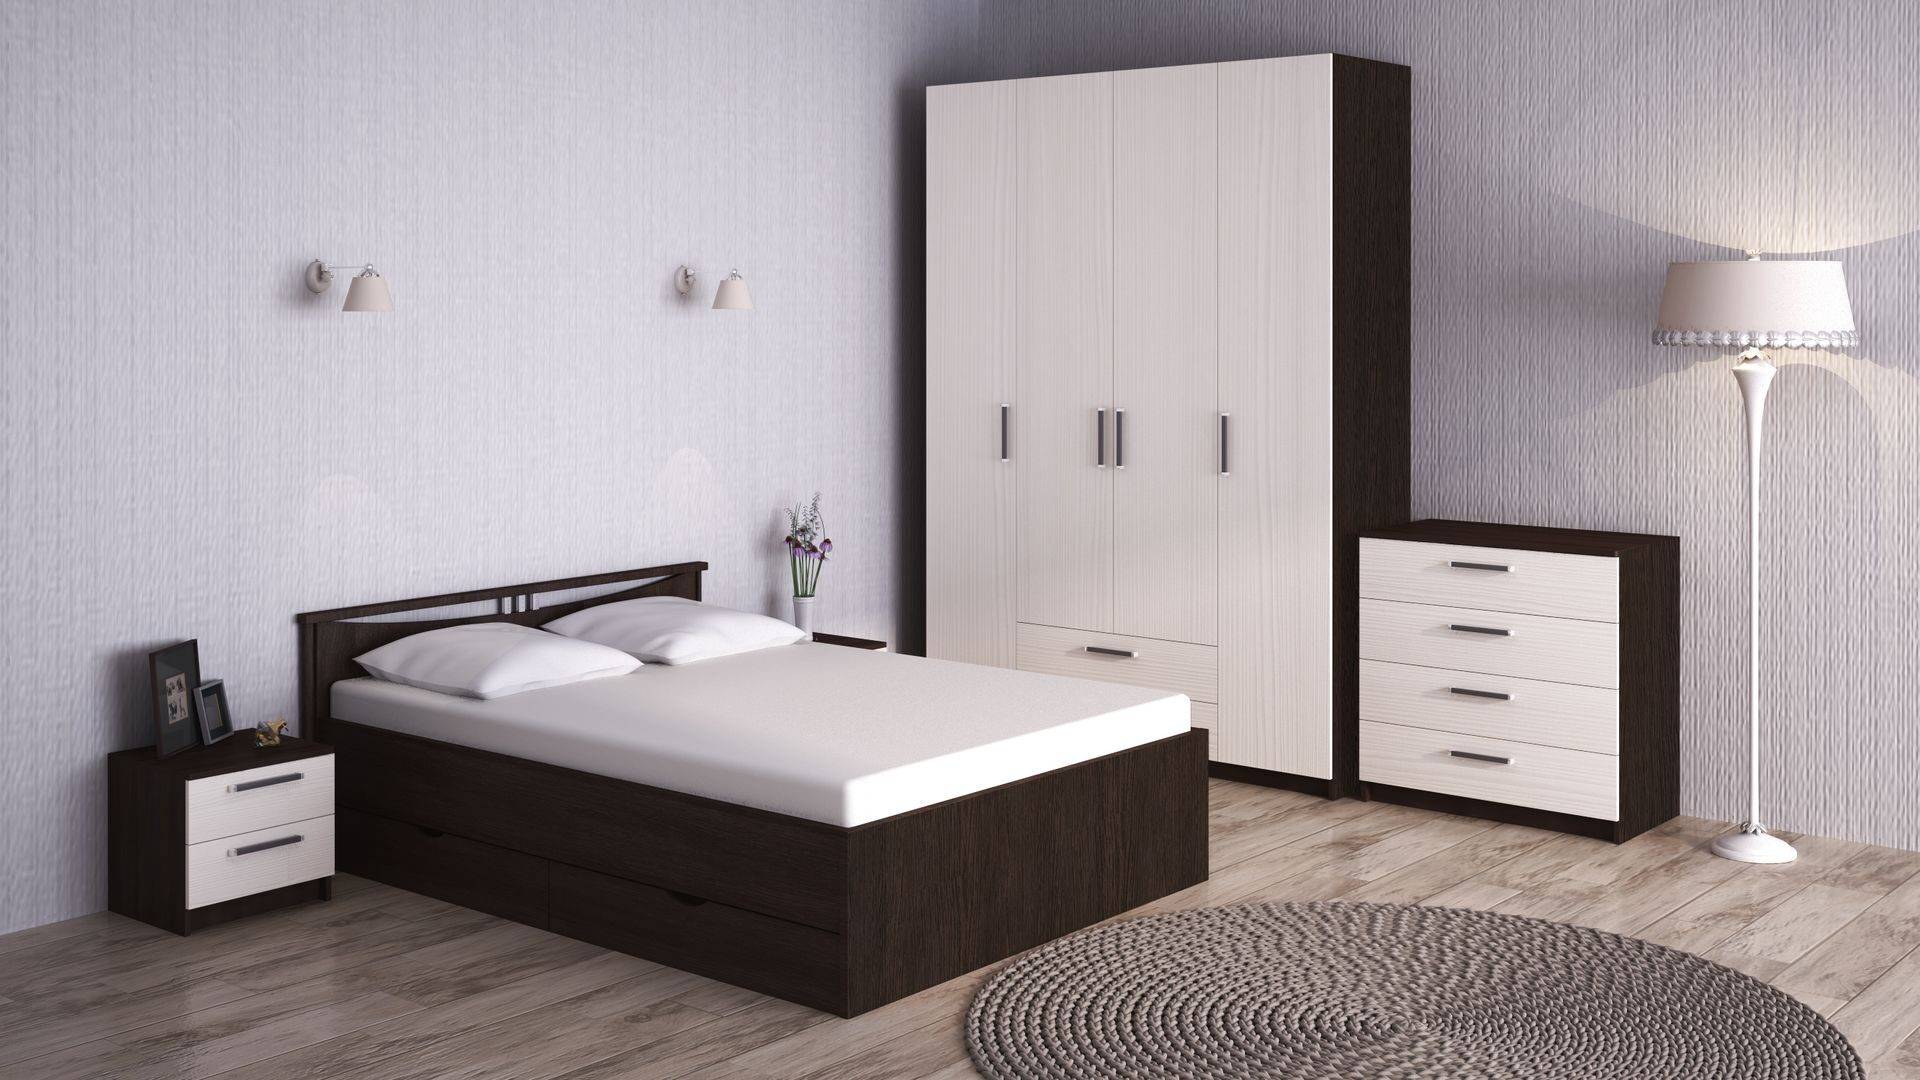 Мебель для спальни в современном стиле: дизайн, зонирование и рекомендации по оформлению спальных комнат